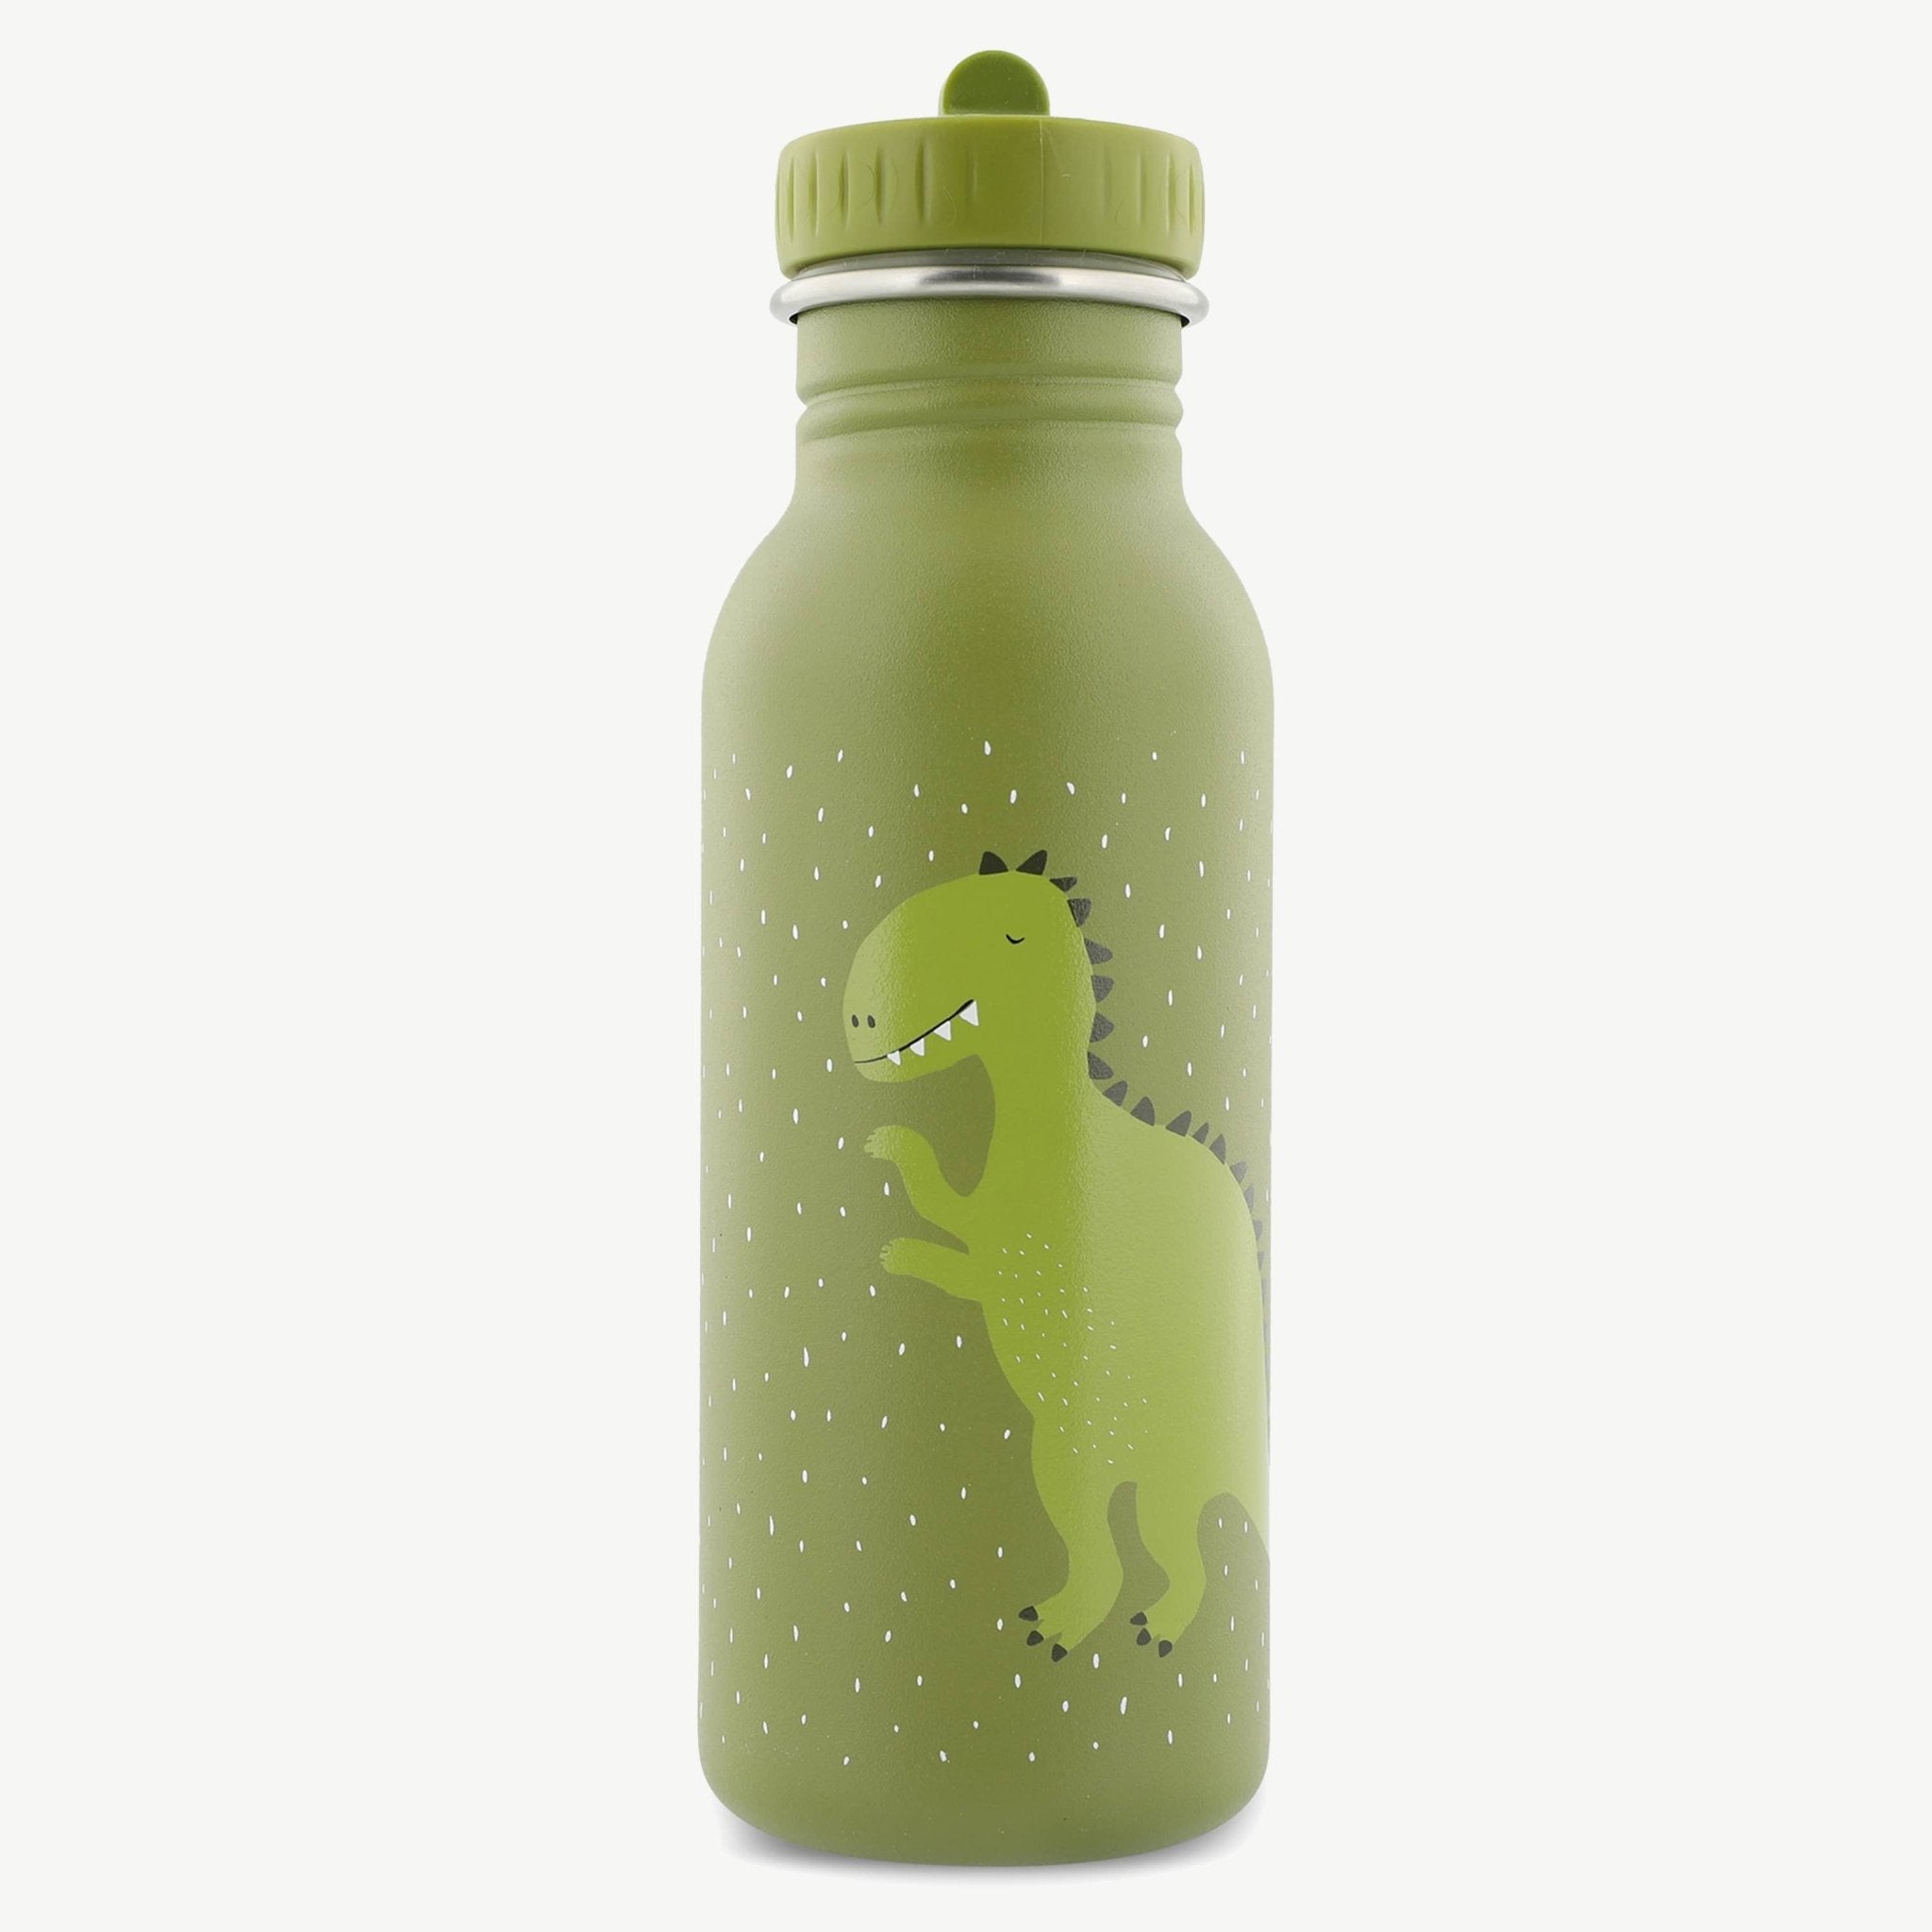 Trixie Magische Tierdesign Trinkflasche - Dein neuer Begleiter für Abenteuer! 🦄✨